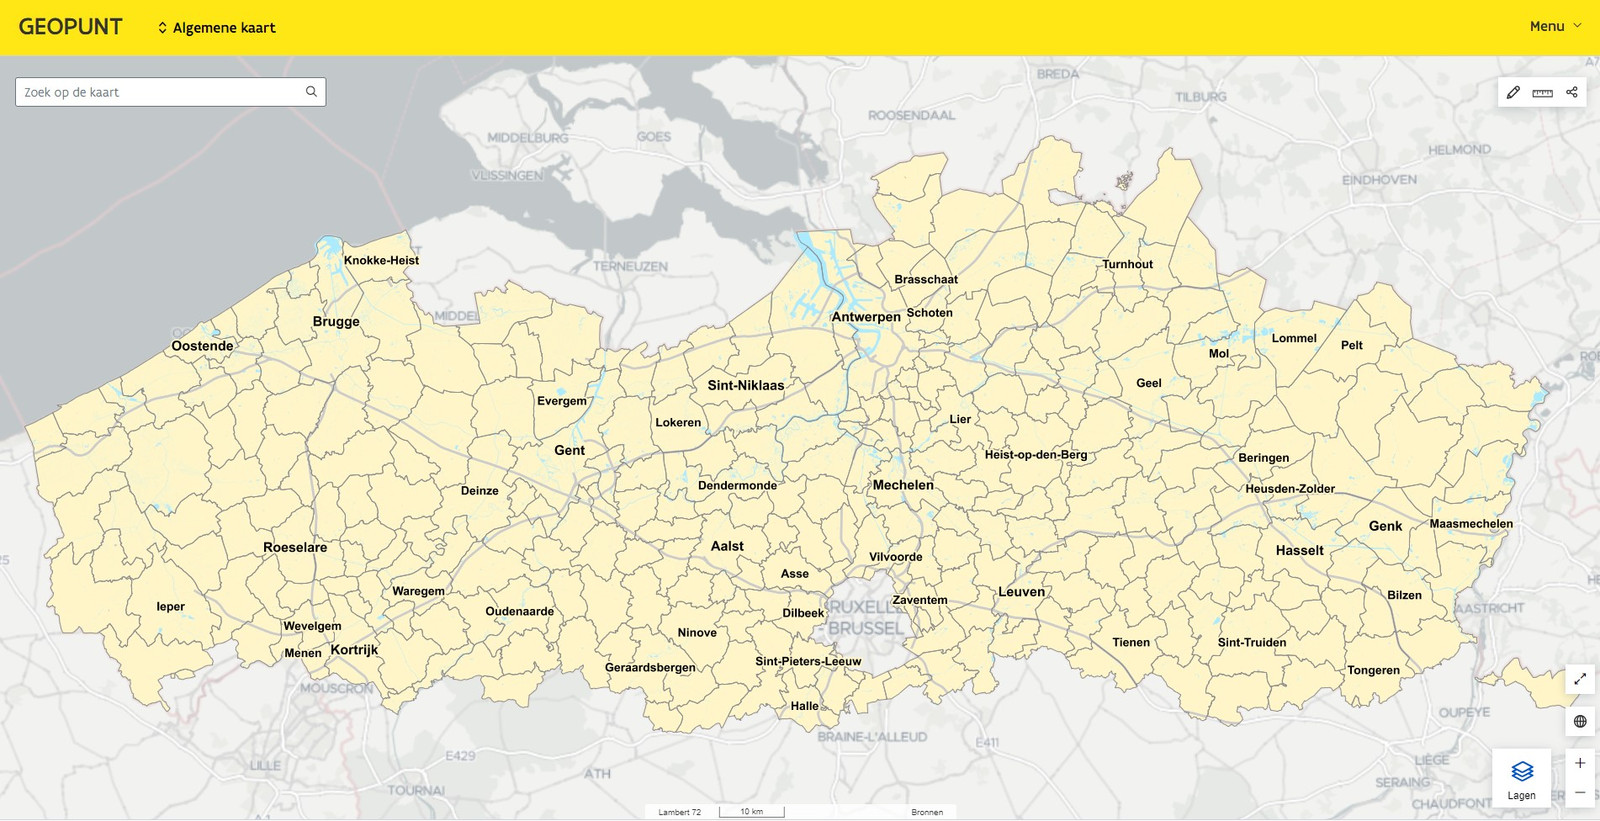 Staat jouw droomhuis in overstromingsgebied? Geopunt vernieuwde website met alle gegevens en de Vlaamse | Foto | hln.be